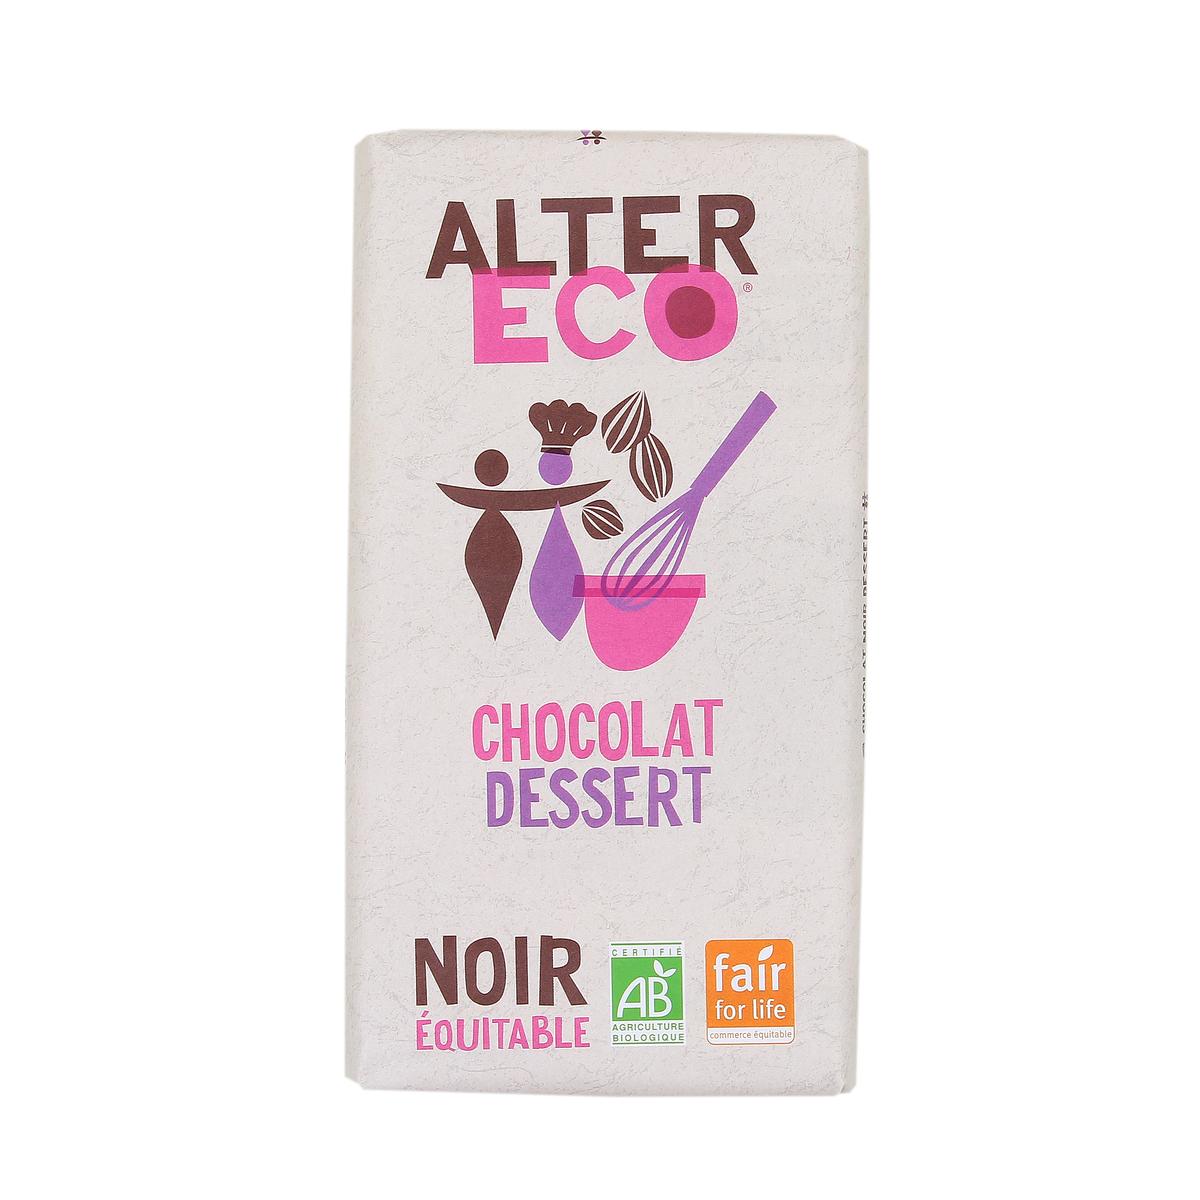 Chocolat Noir Dessert Pâtissier 56% Bio et Équitable